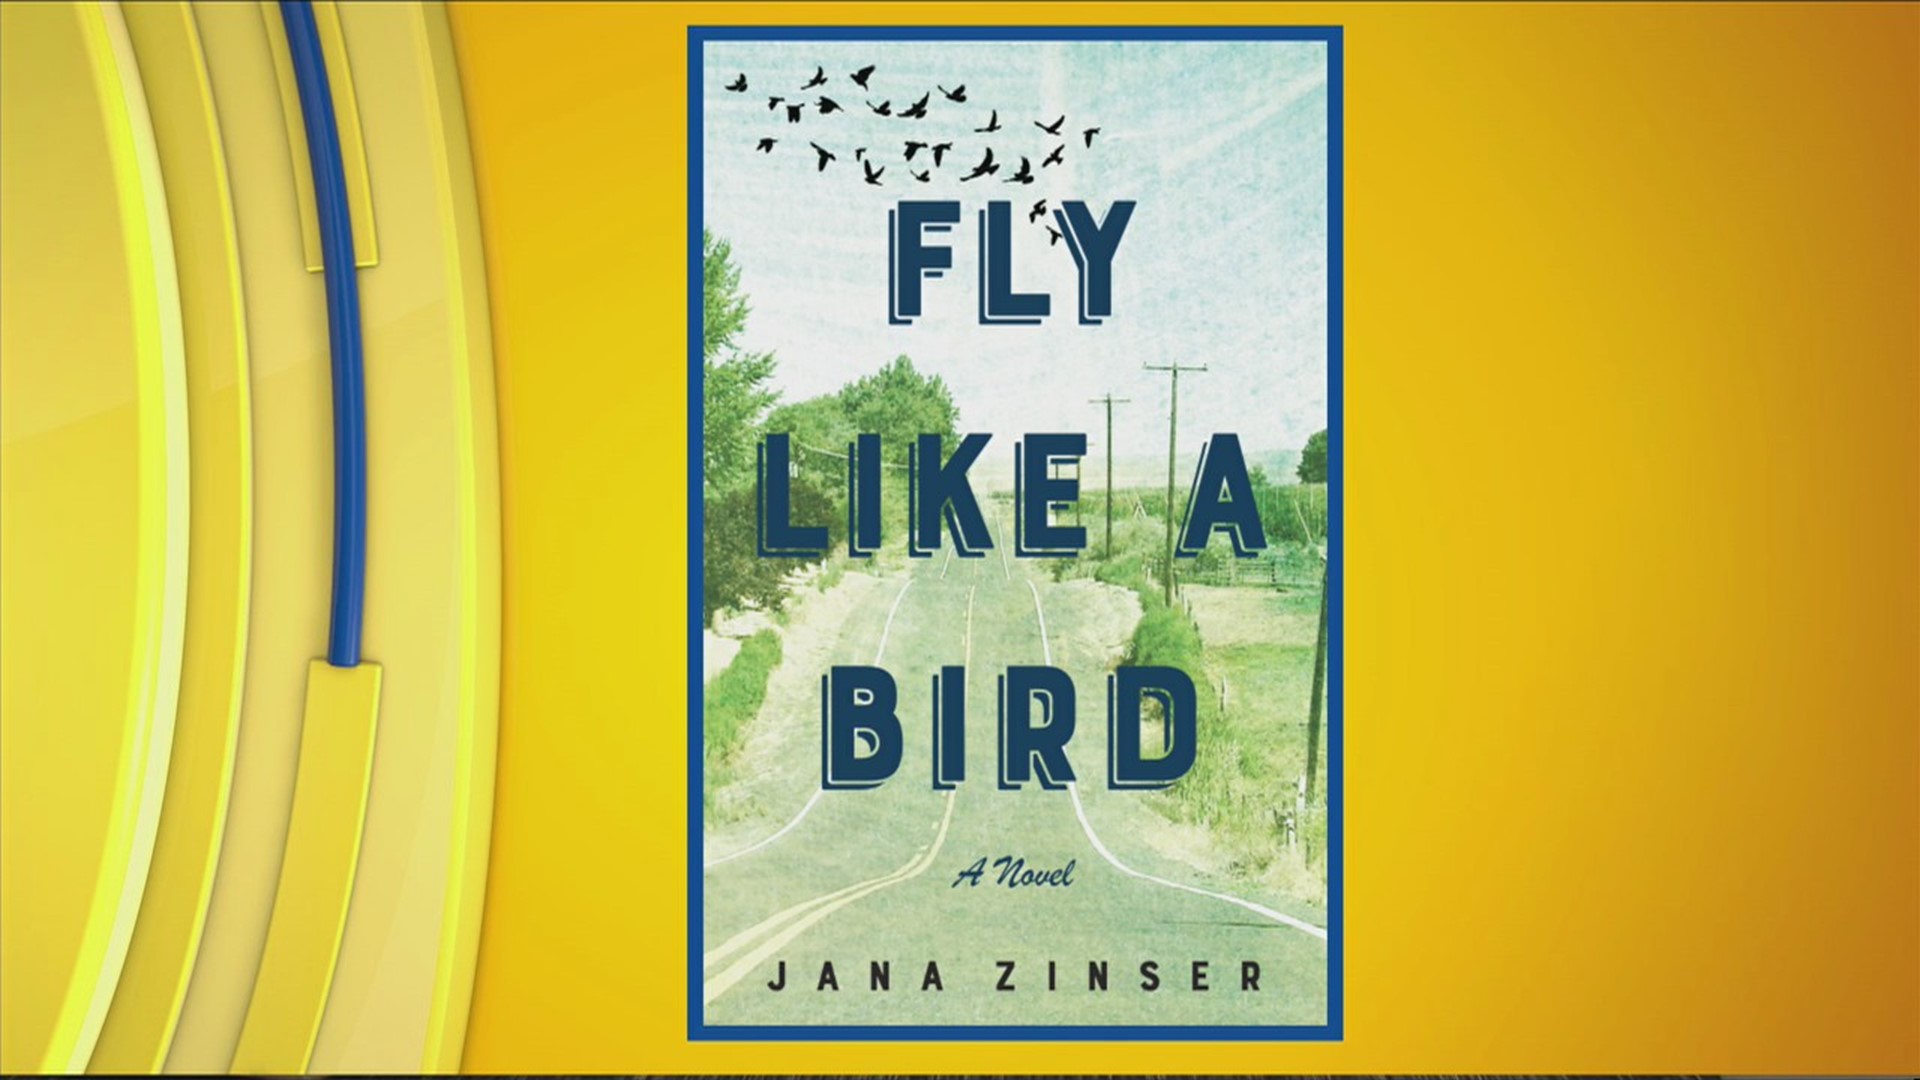 Jana Zinser, Author of Fly Like A Bird